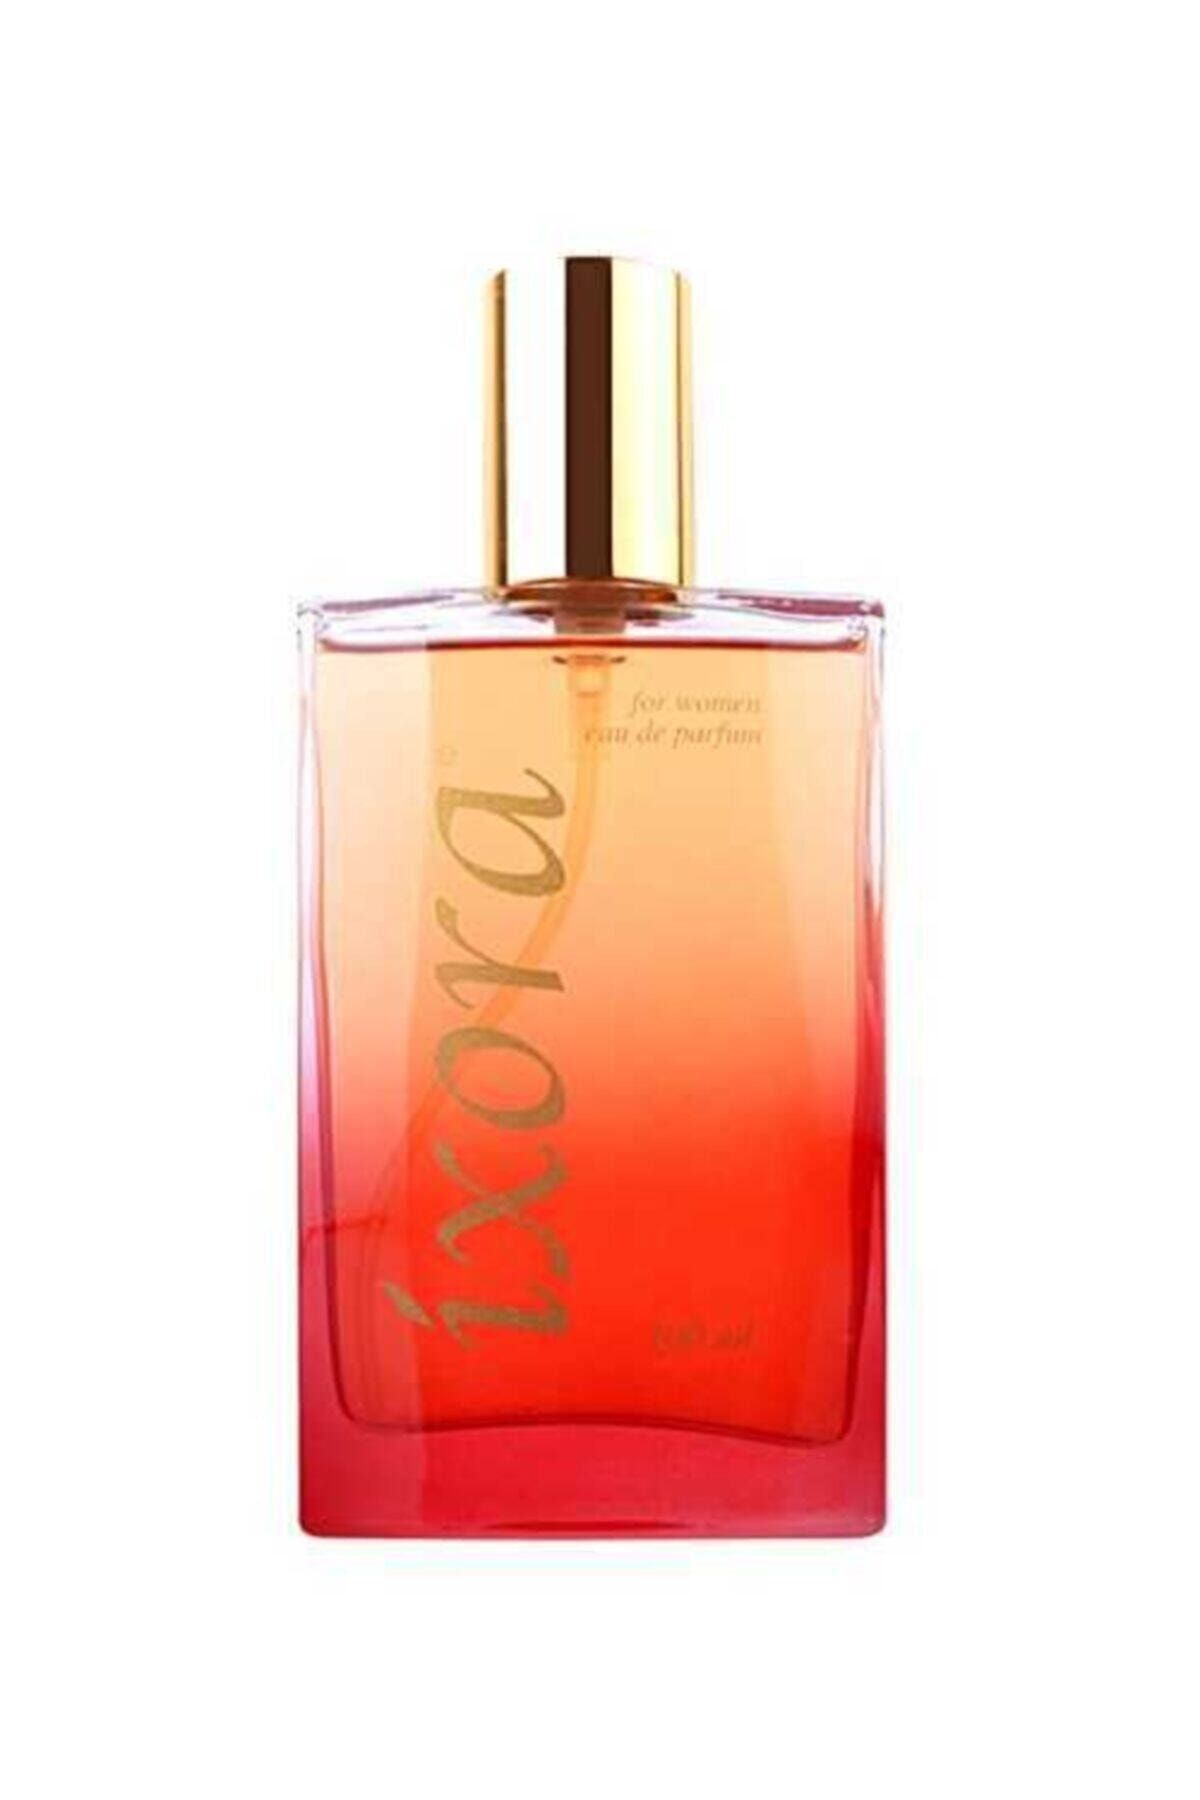 Ixora B316 Princess100 ml Kadın Parfüm